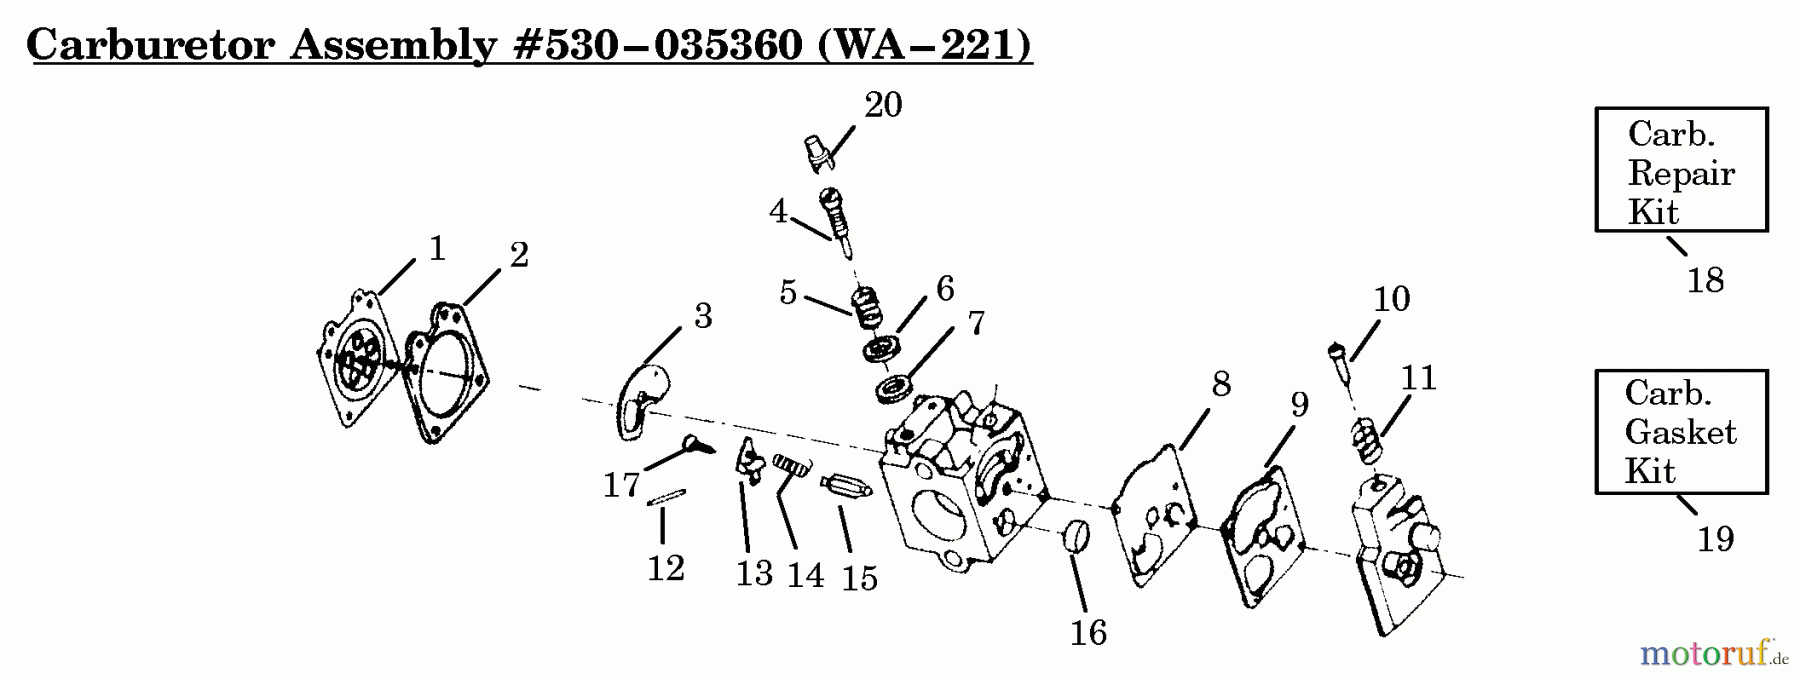  Poulan / Weed Eater Motorsensen, Trimmer HP30SBP - Weed Eater String Trimmer Carburetor Assembly (WA221) P/N 530035360